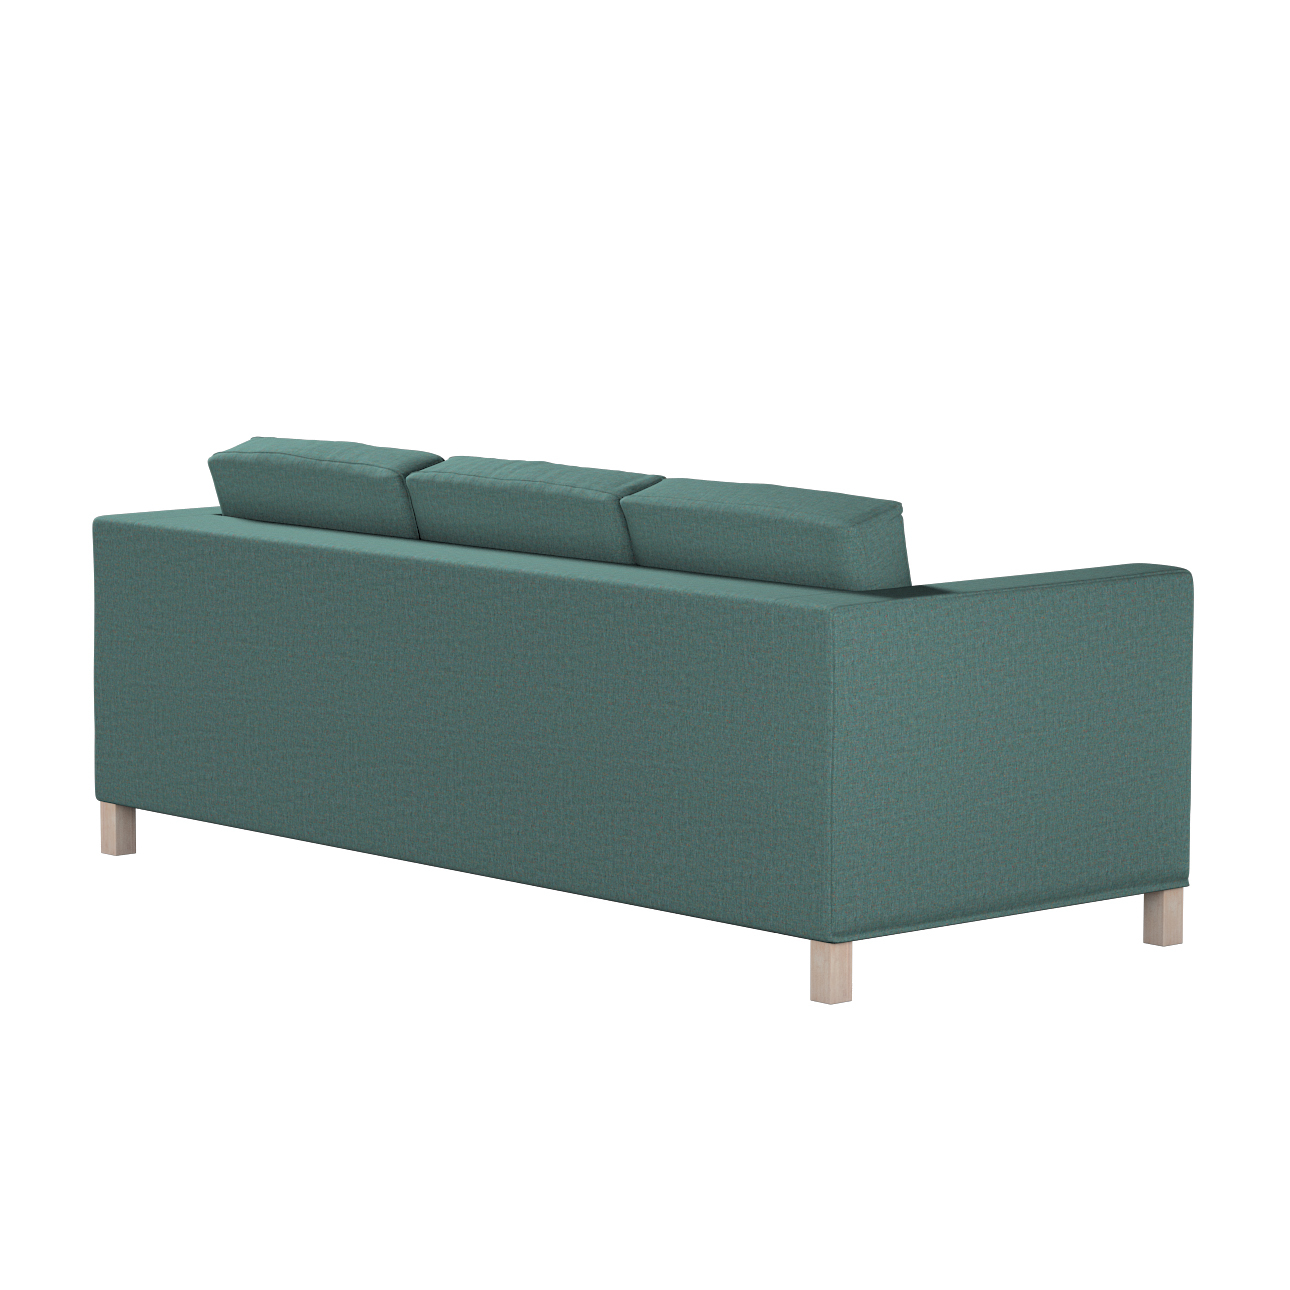 Bezug für Karlanda 3-Sitzer Sofa nicht ausklappbar, kurz, türkis, Bezug für günstig online kaufen